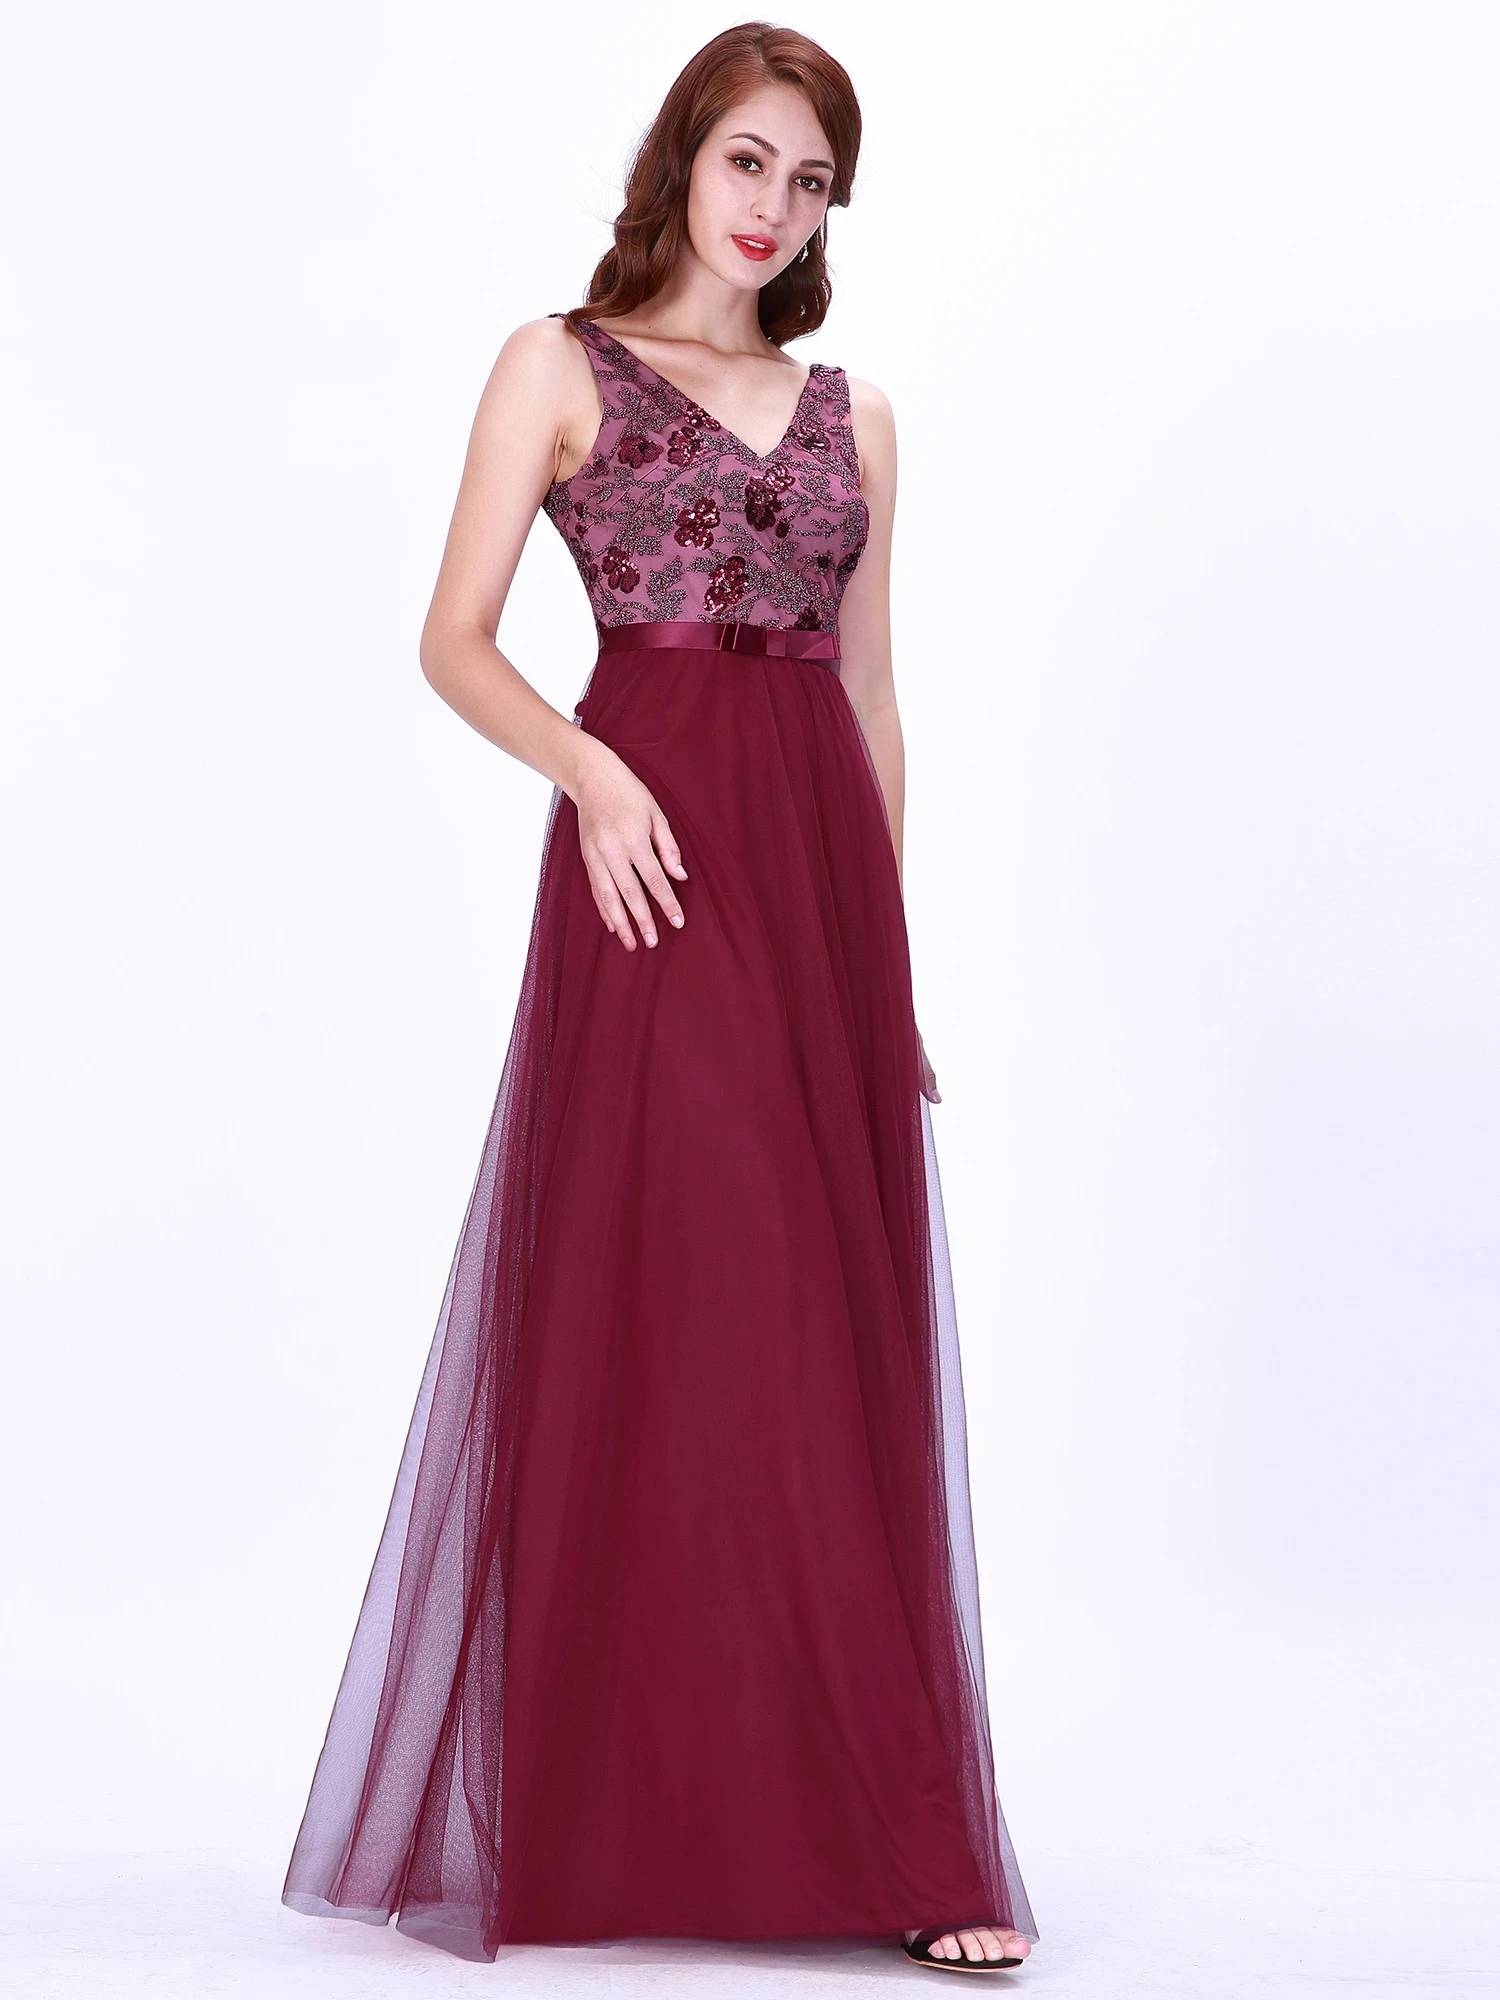 

Женское длинное платье Ever Pretty, Бордовое платье с V-образным вырезом, EZ07626, для торжества